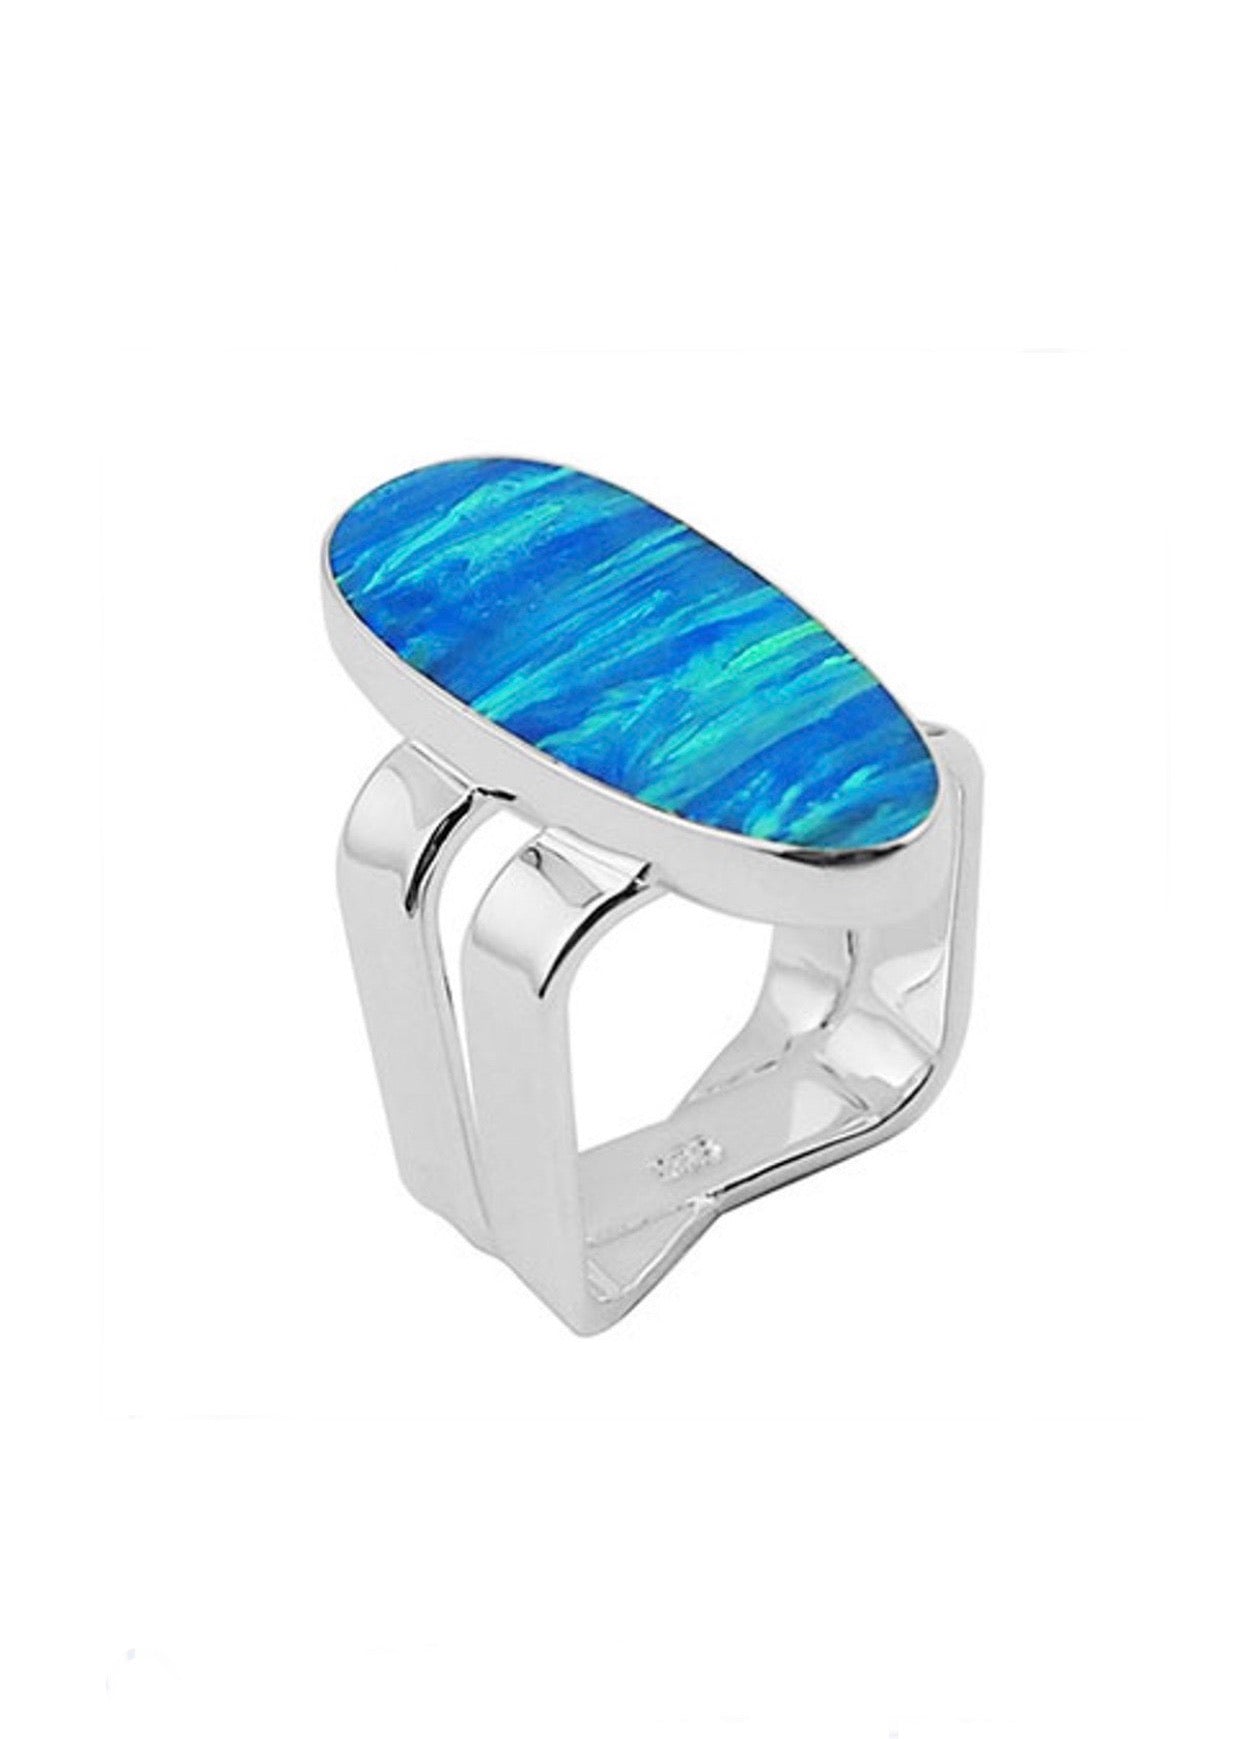 Oval Blue Fire Opal Ring